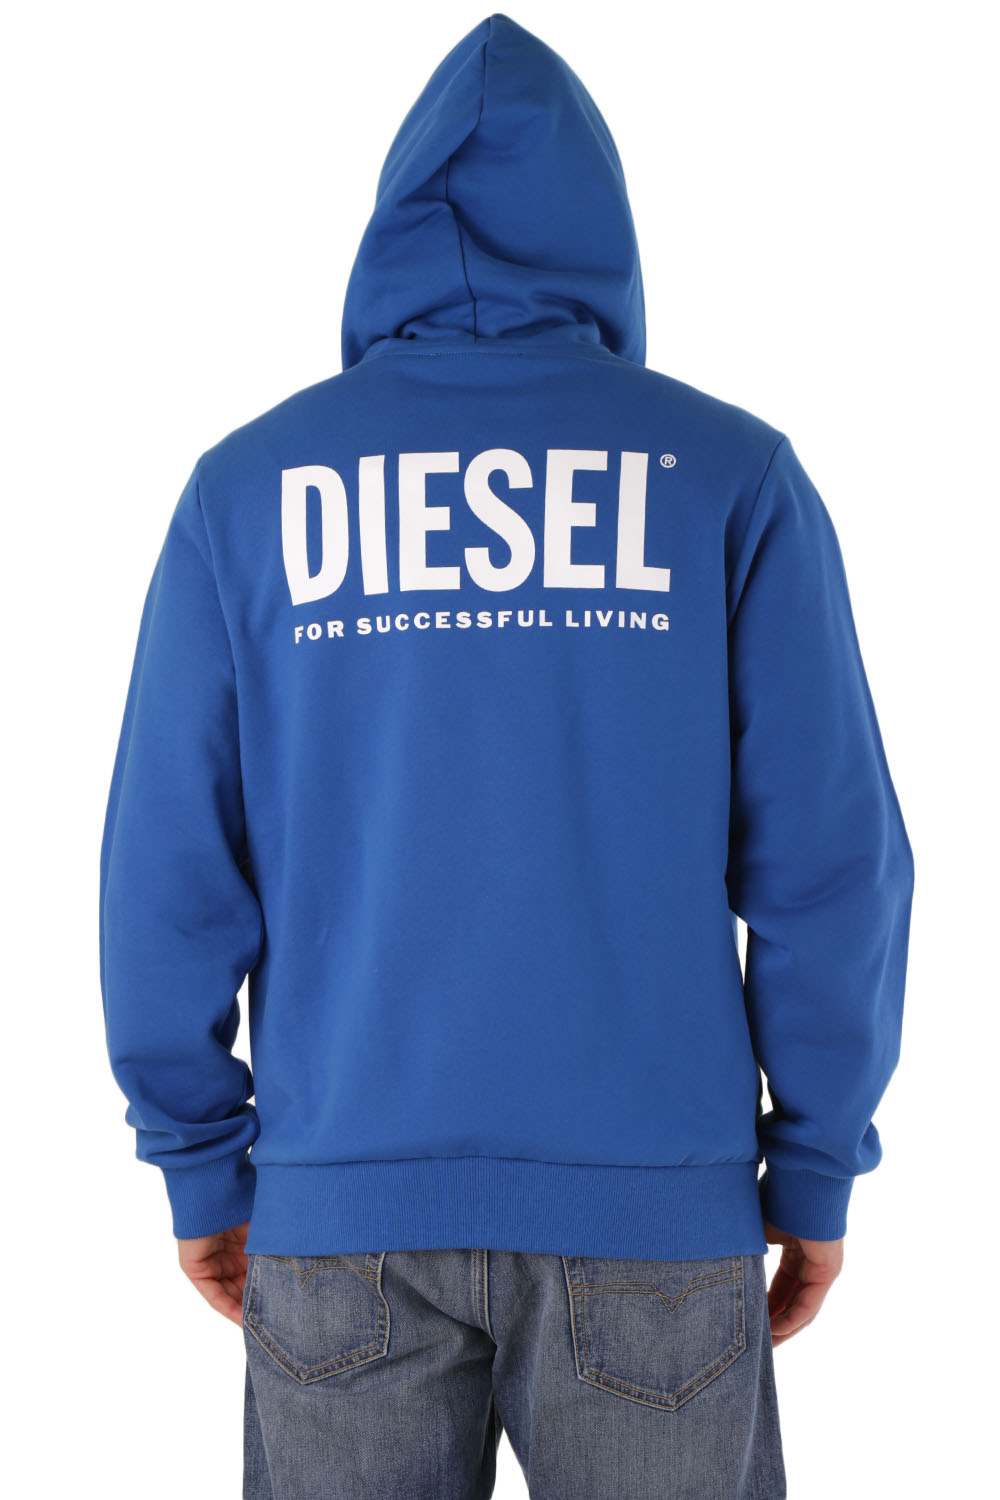 diesel - felpe